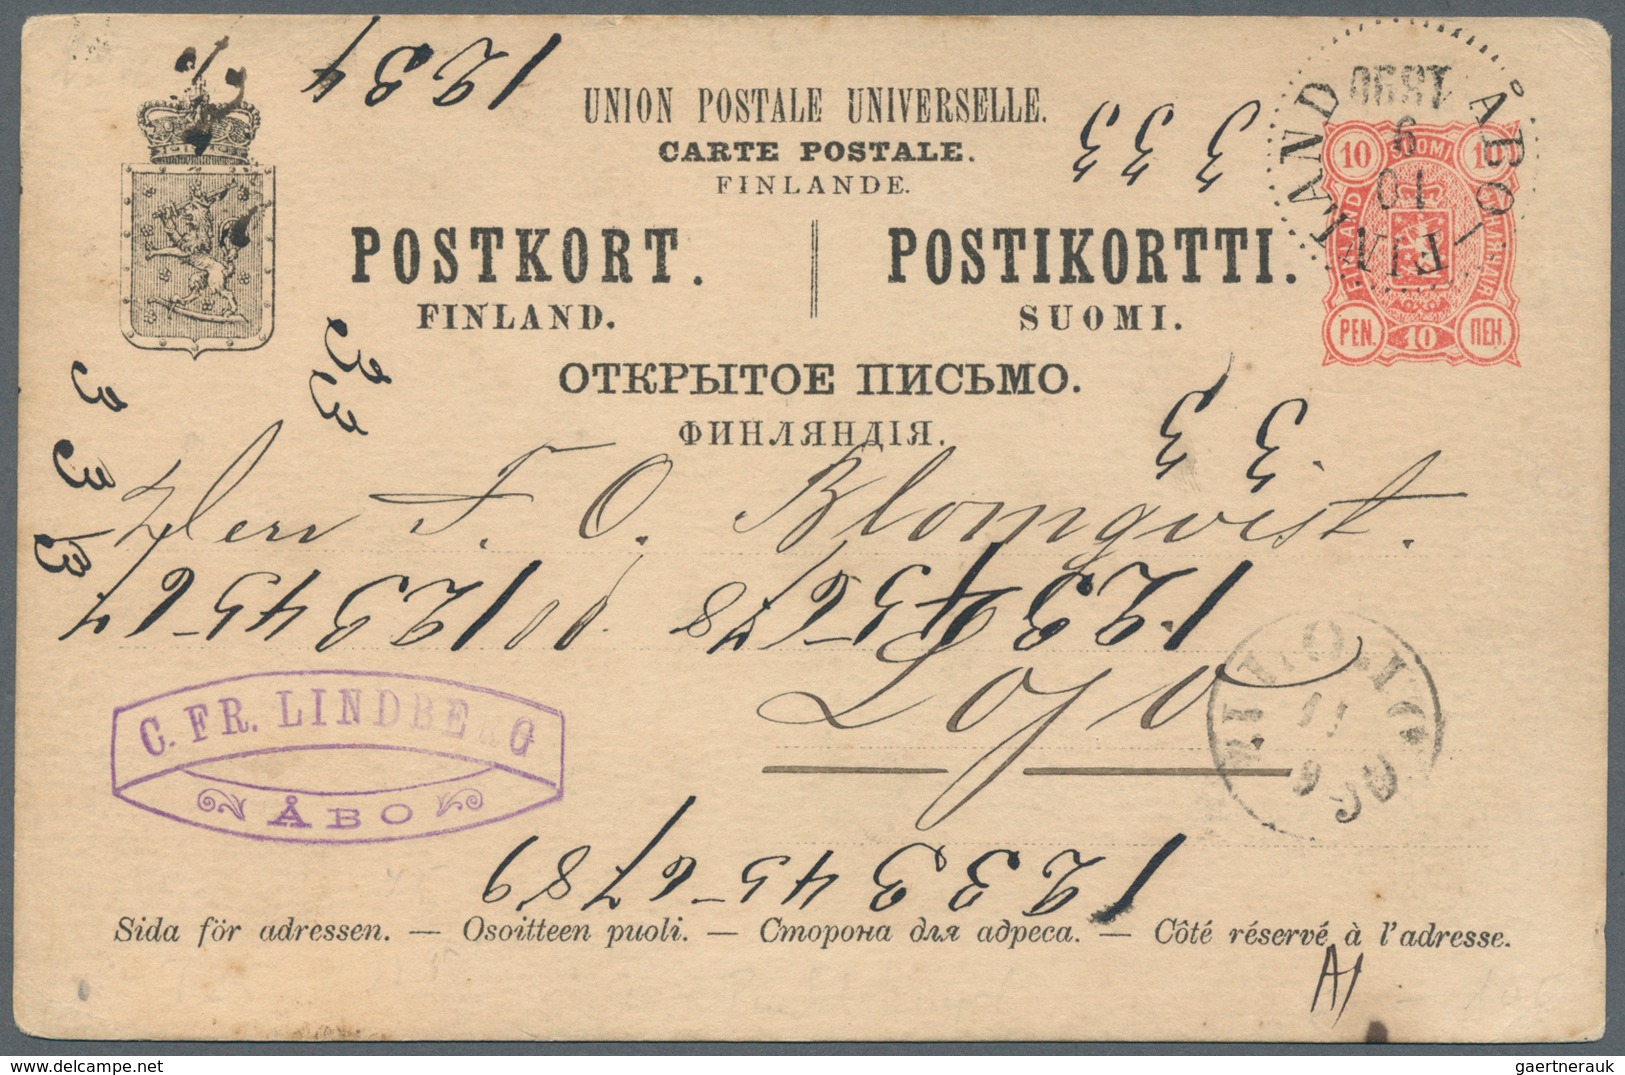 Finnland - Stempel: 1880/1950, Gut 1000 Belege mit Schwerpunkt bei den Stempeln. Dabei Paketkarten a